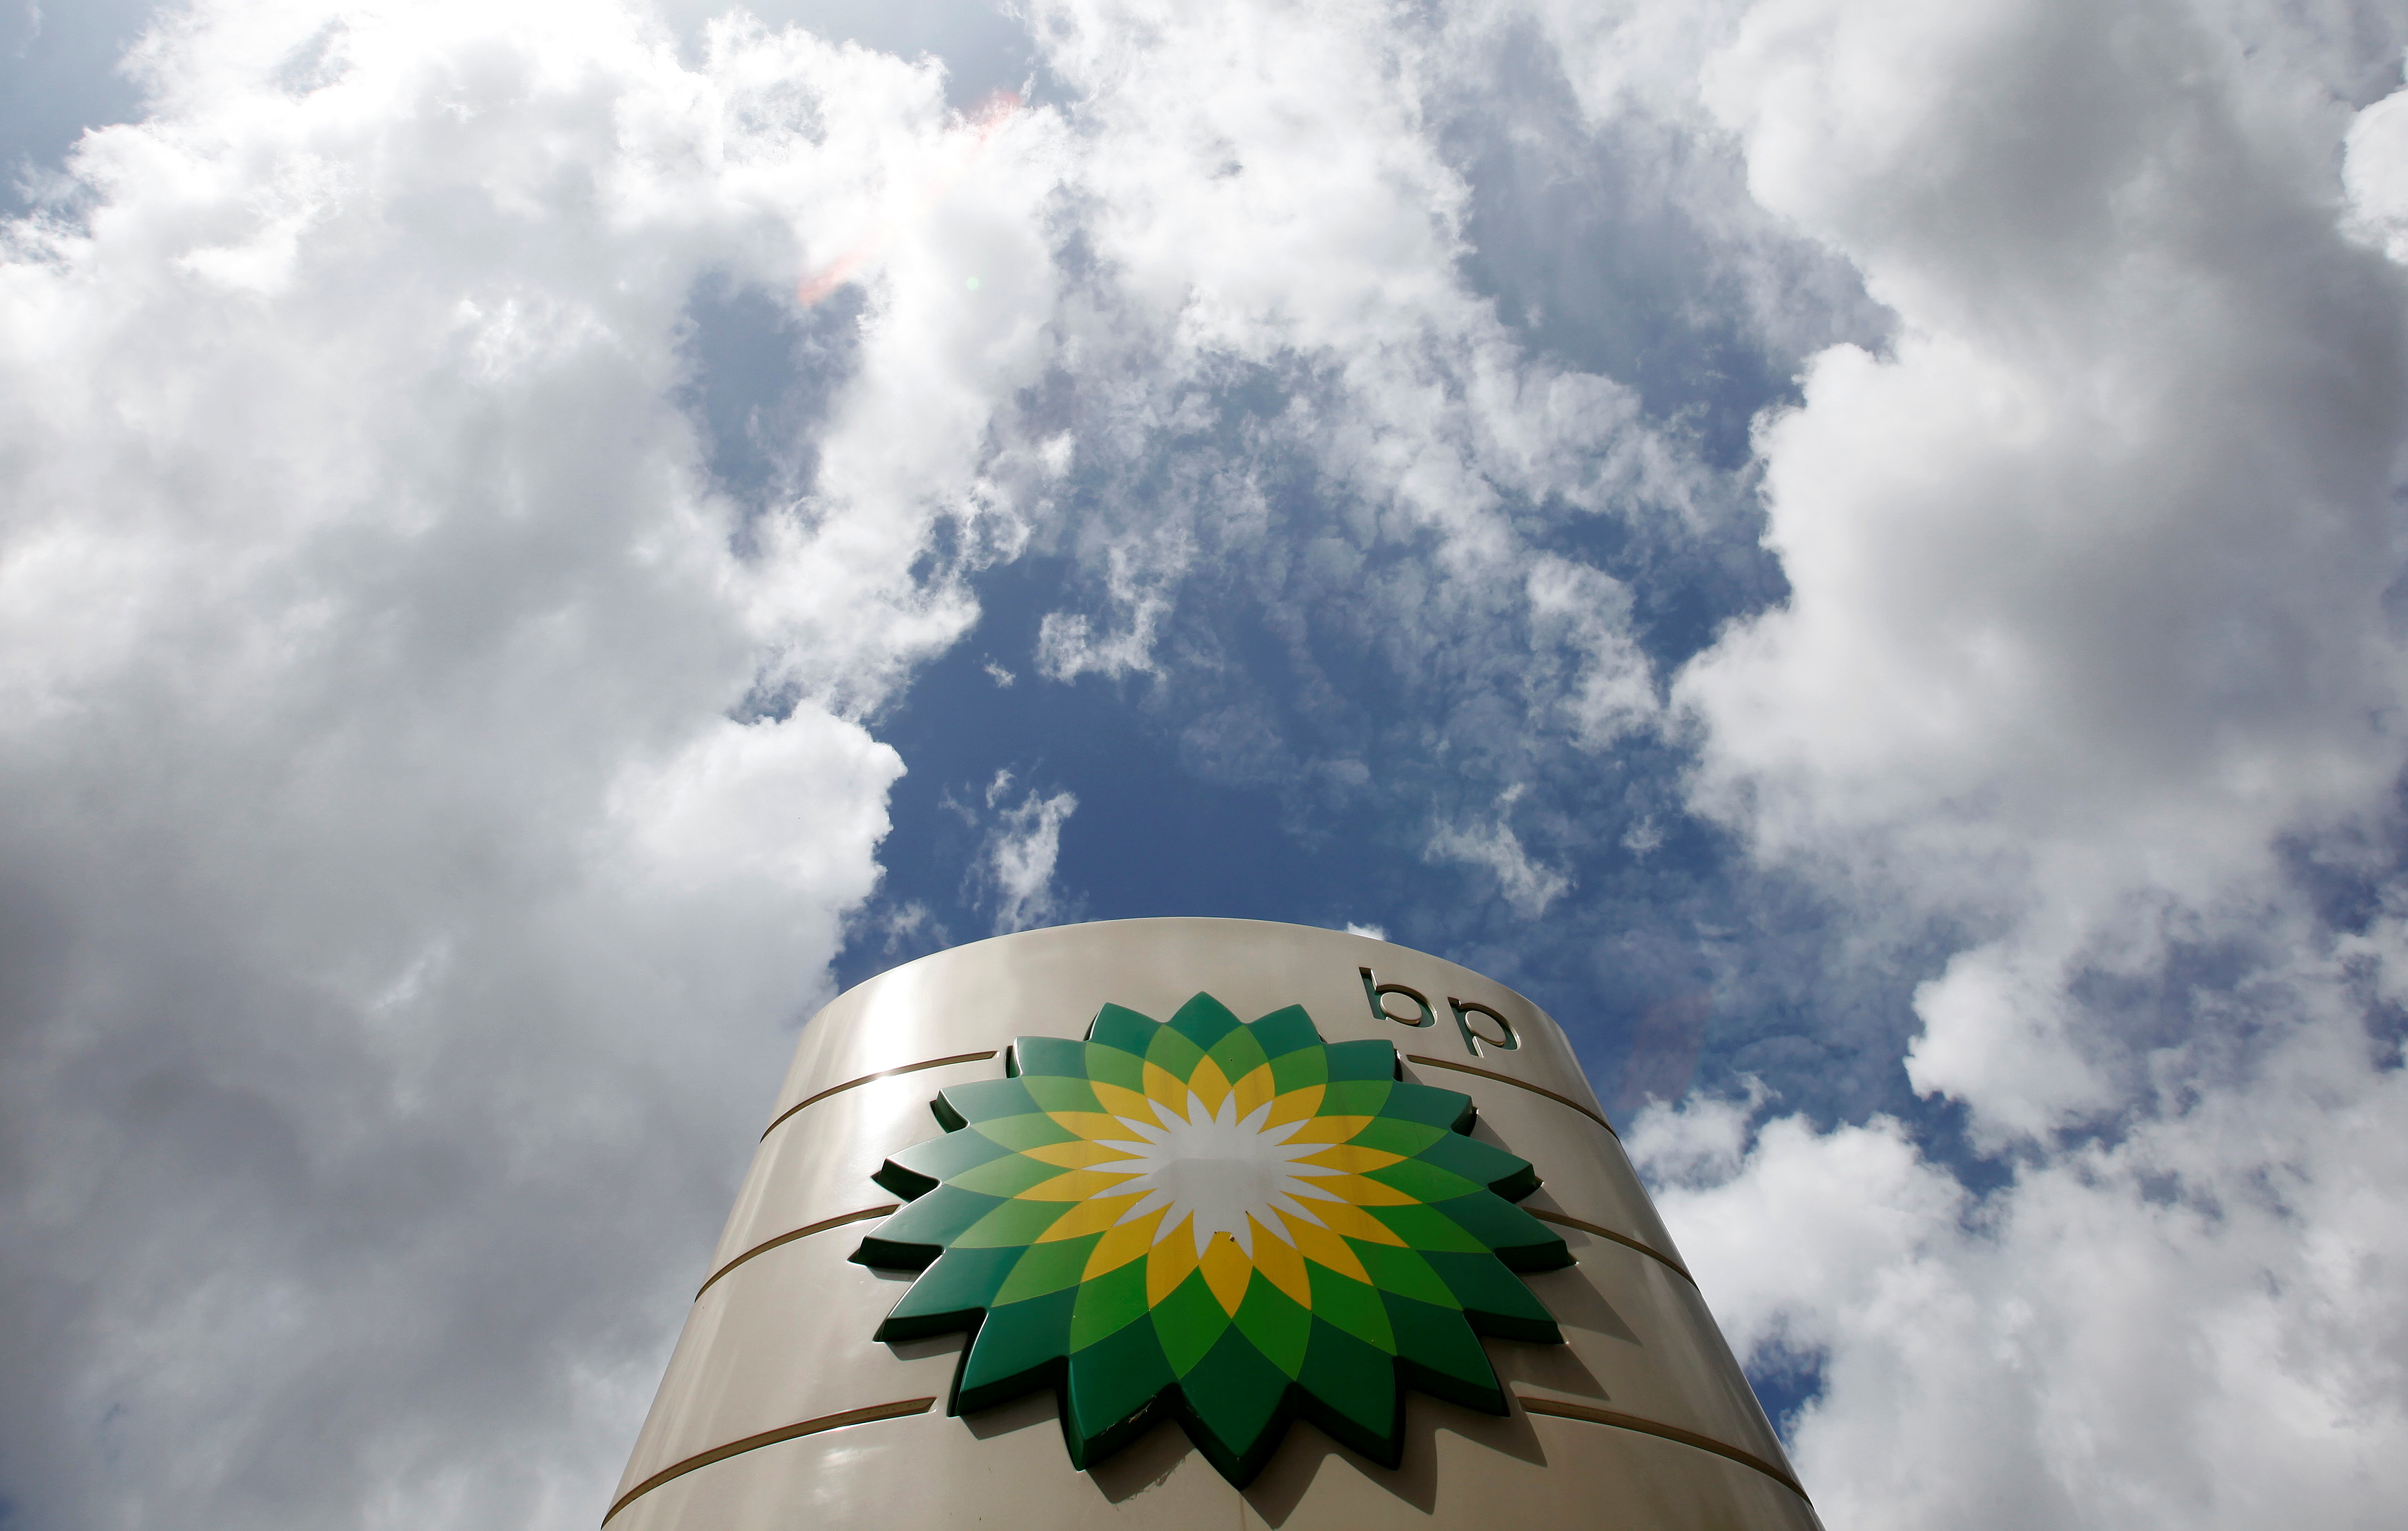 Pétrole : comme les autres majors, BP voit ses résultats flamber grâce la forte reprise économique